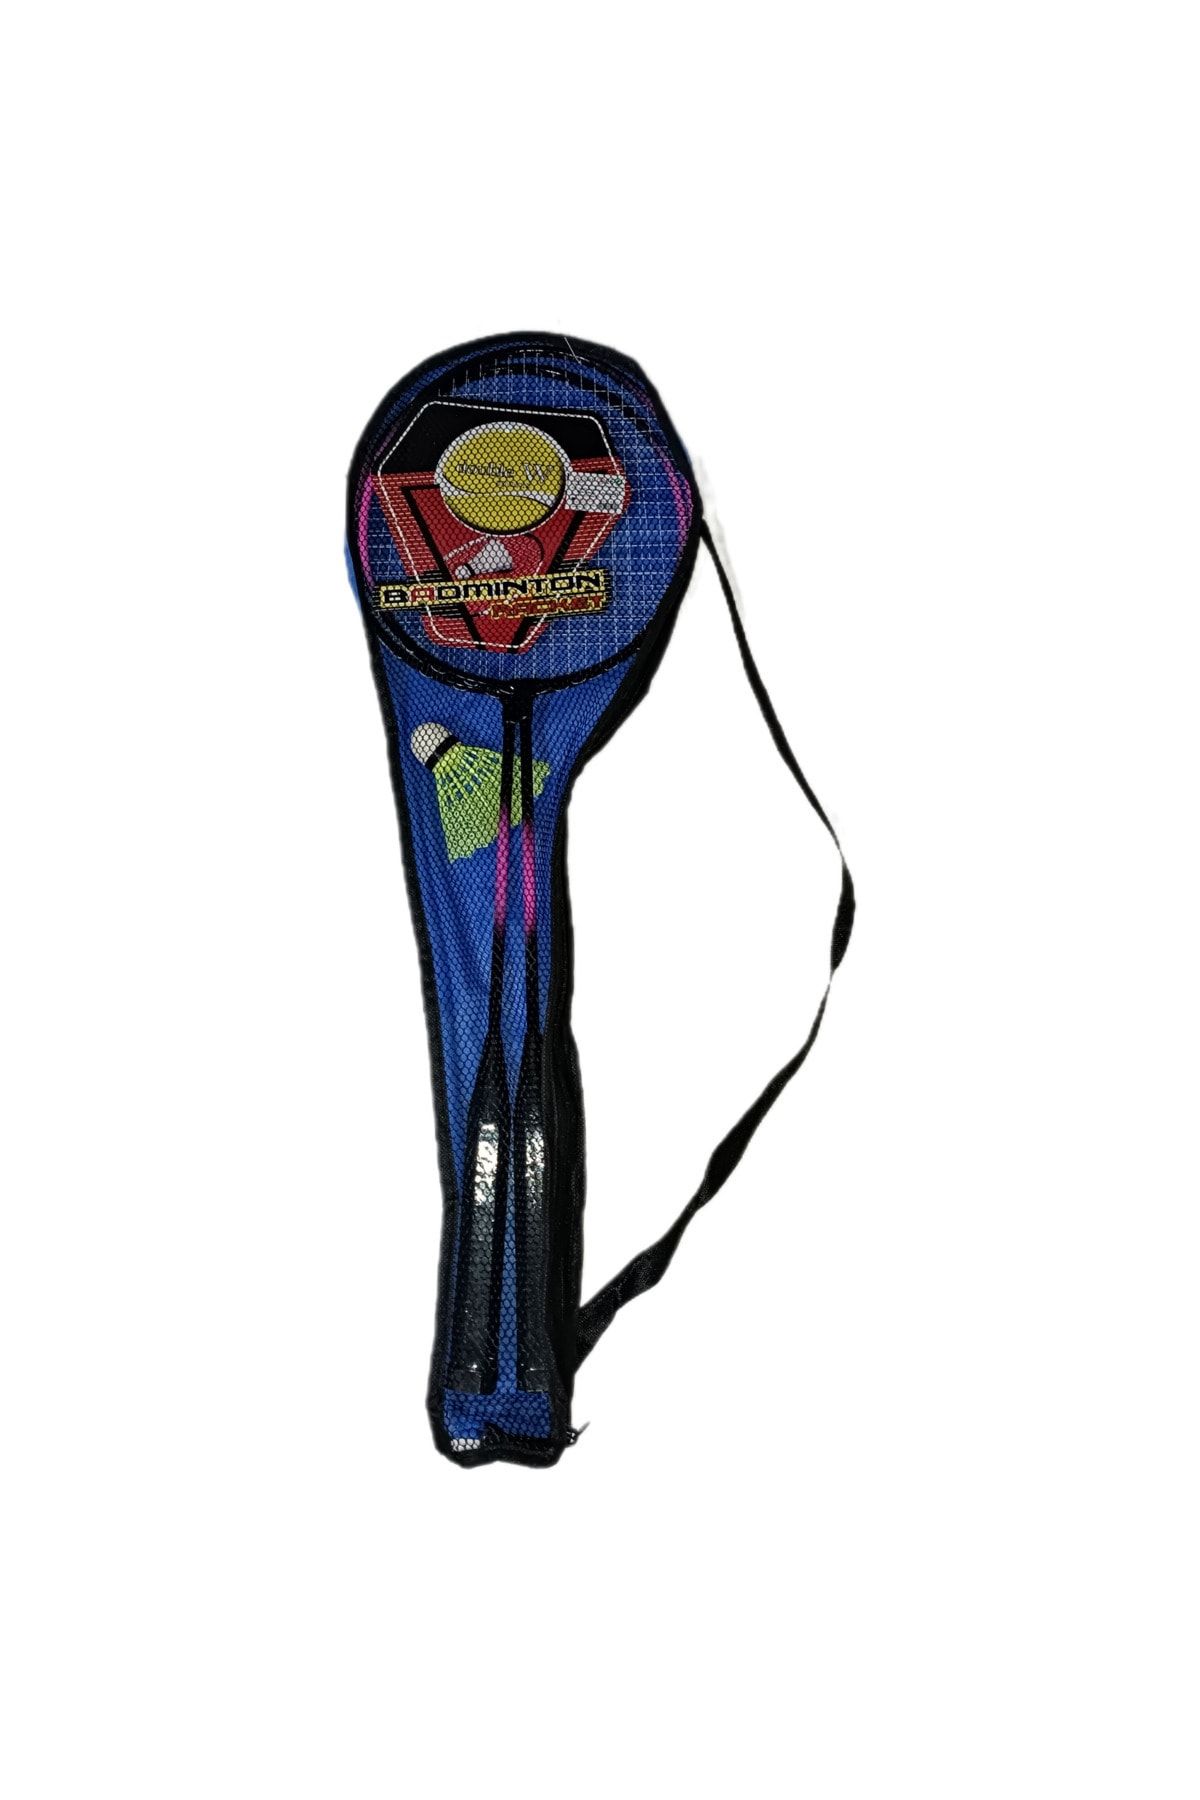 CeyDef Badminton raket seti 2 raket 1 top ve taşıma çantası amatör ve hobi kullanım